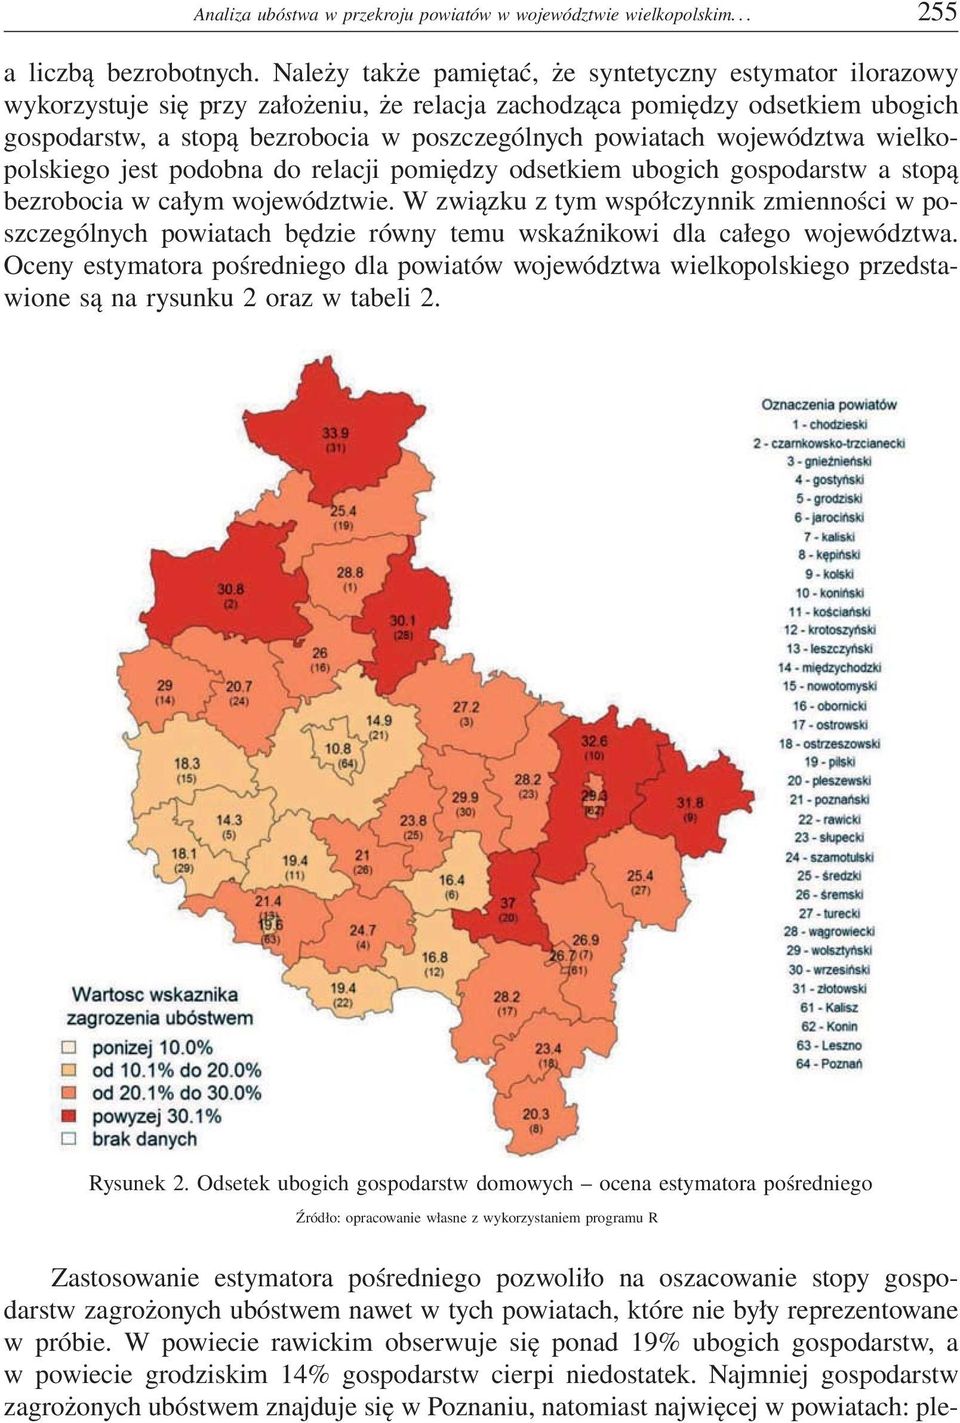 województwa wielkopolskiego jest podobna do relacji pomiędzy odsetkiem ubogich gospodarstw a stopą bezrobocia w całym województwie.